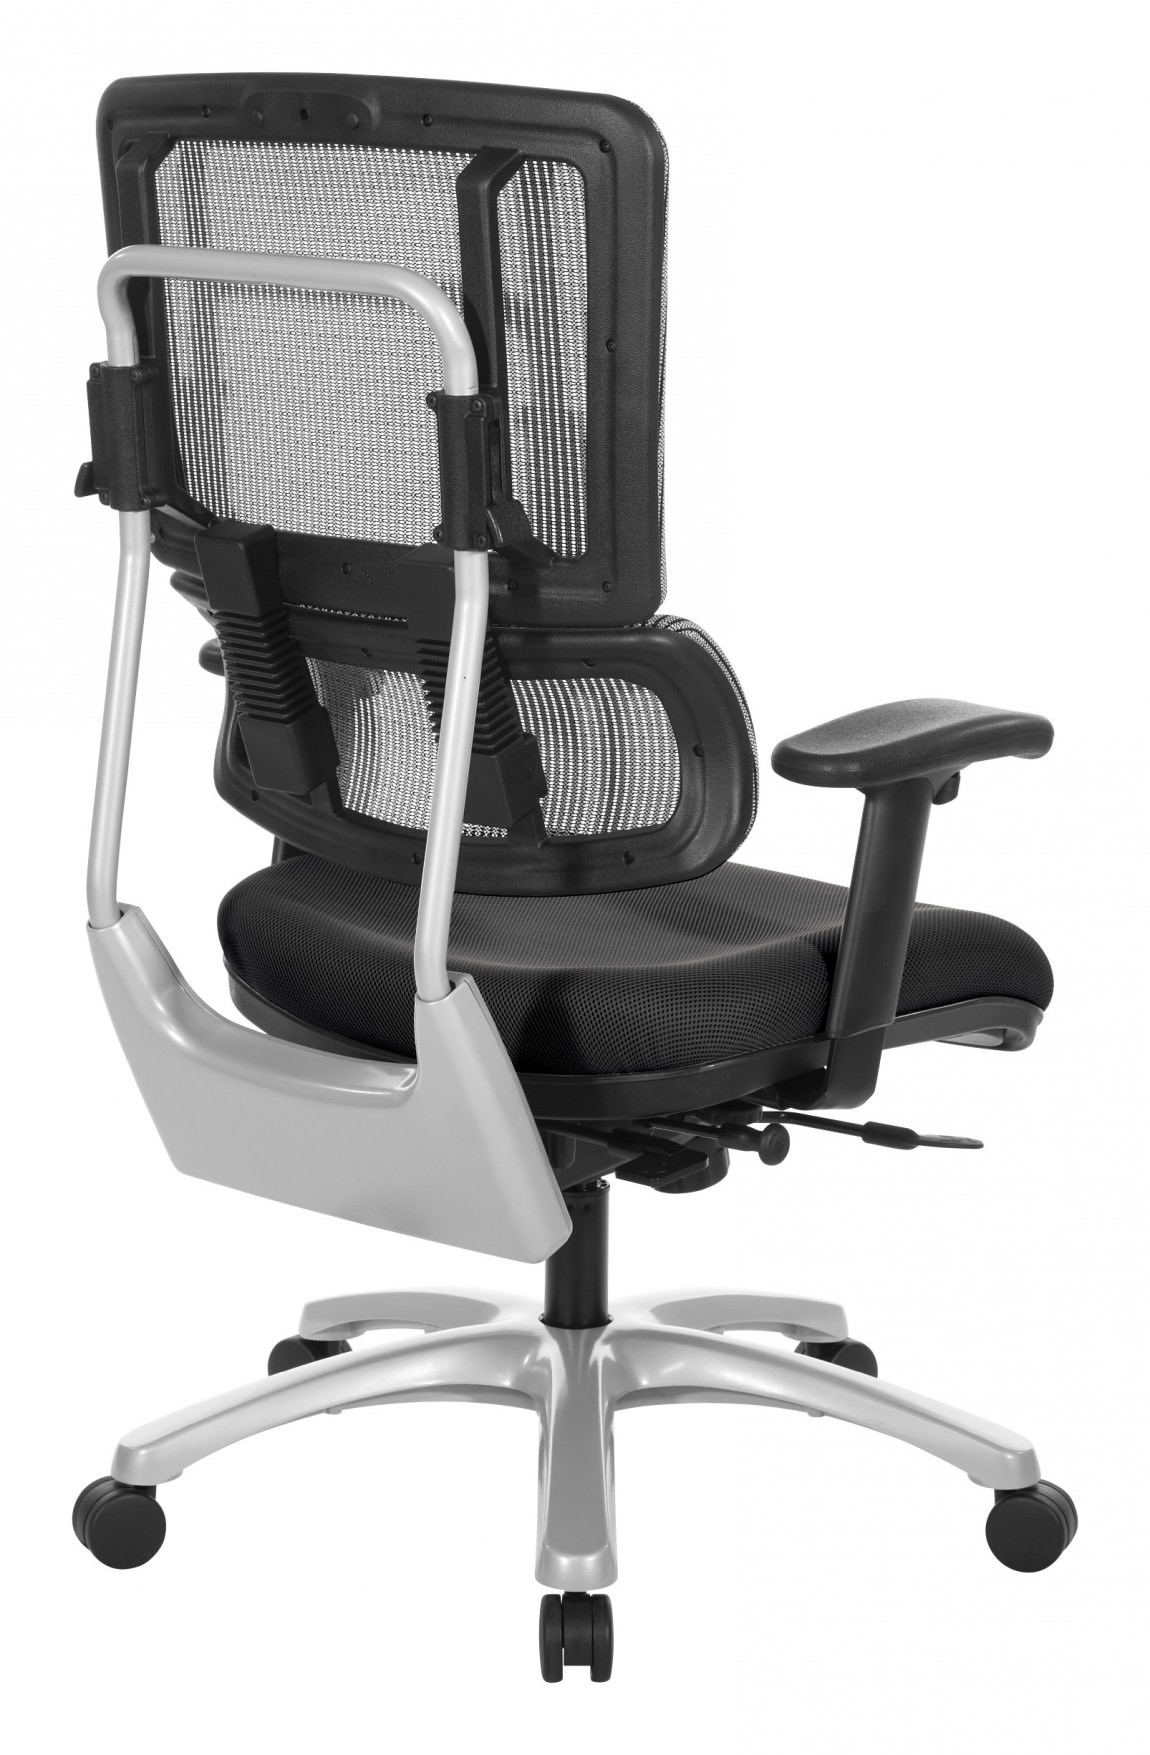 Mesh Back Ergonomic Office Chair